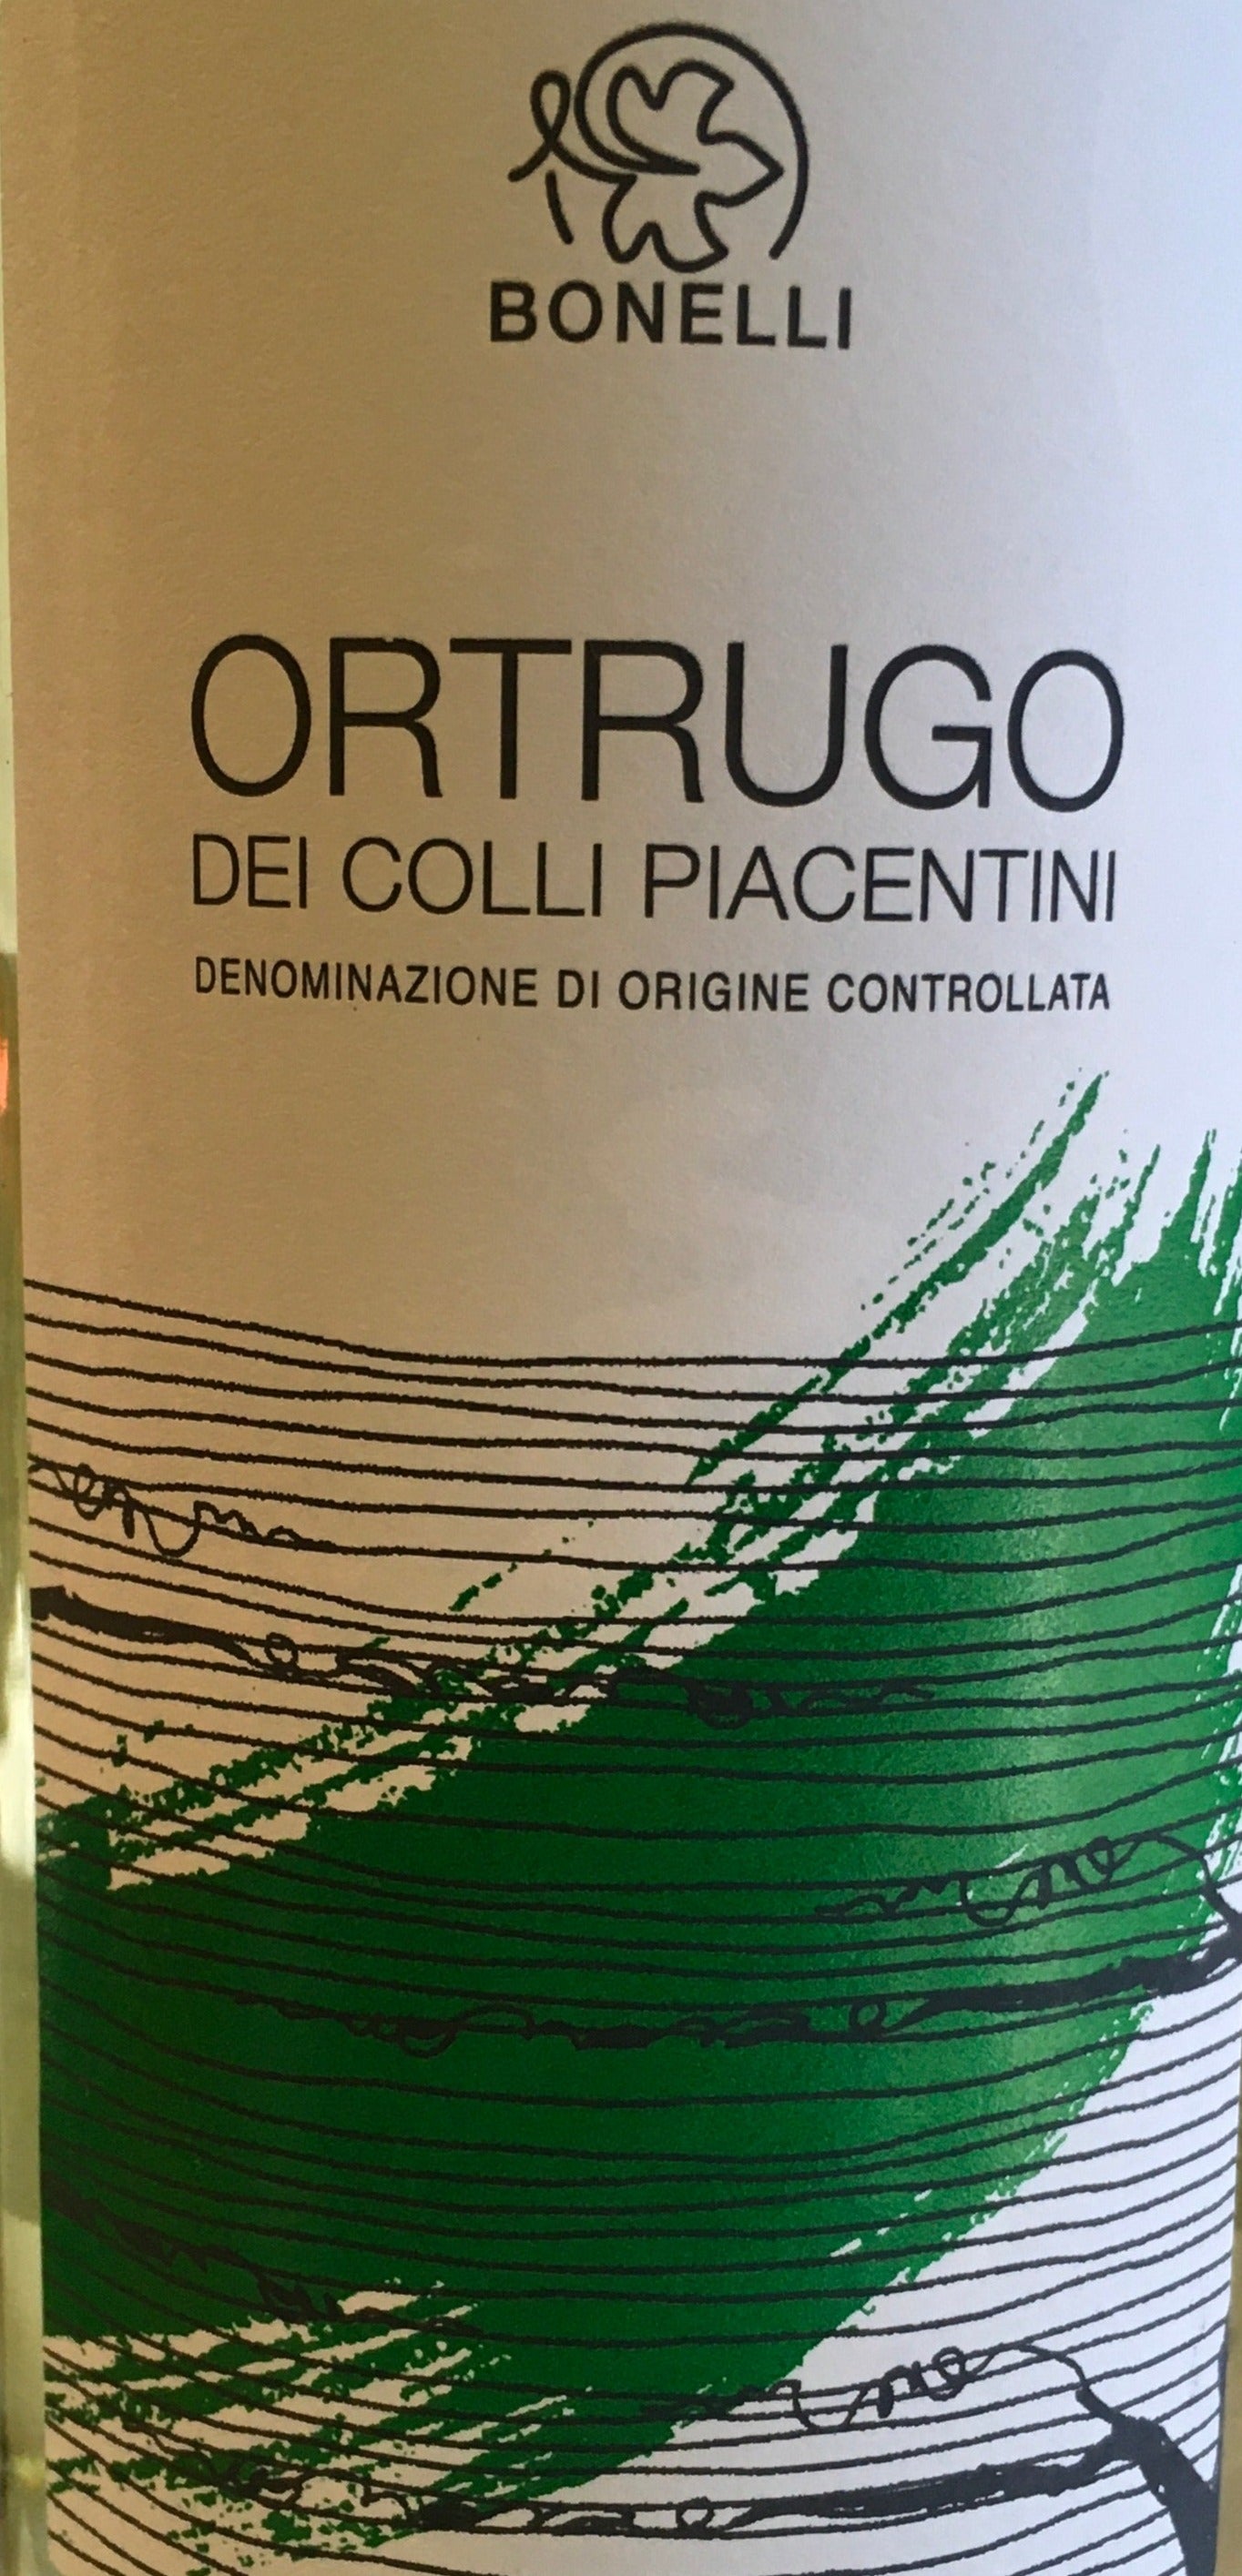 Colli Feed - Bonelli dei – Wine DOC Ortrugo Piacentini The